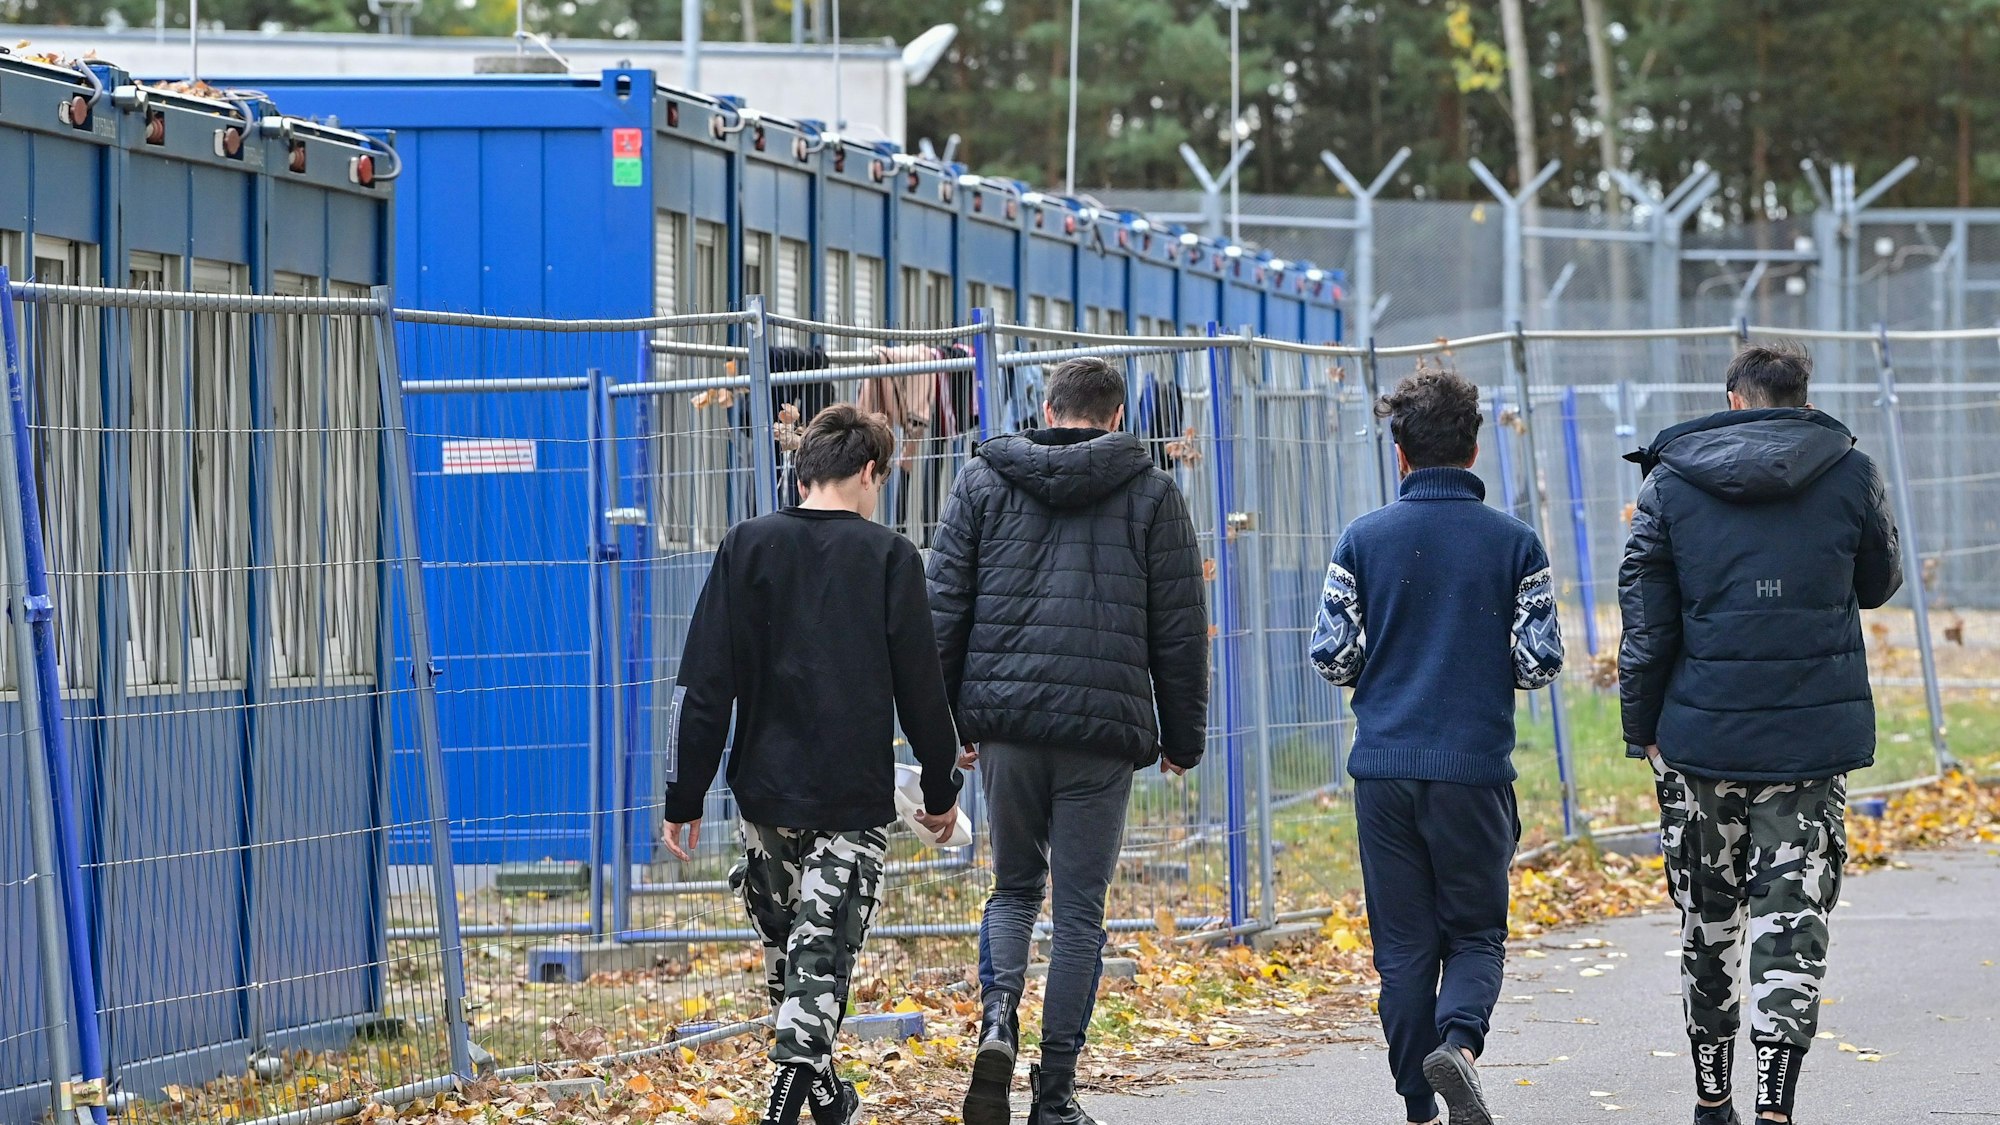 Vier Jugendliche sind von hinten zu sehen, daneben stehen Container für Geflüchtete